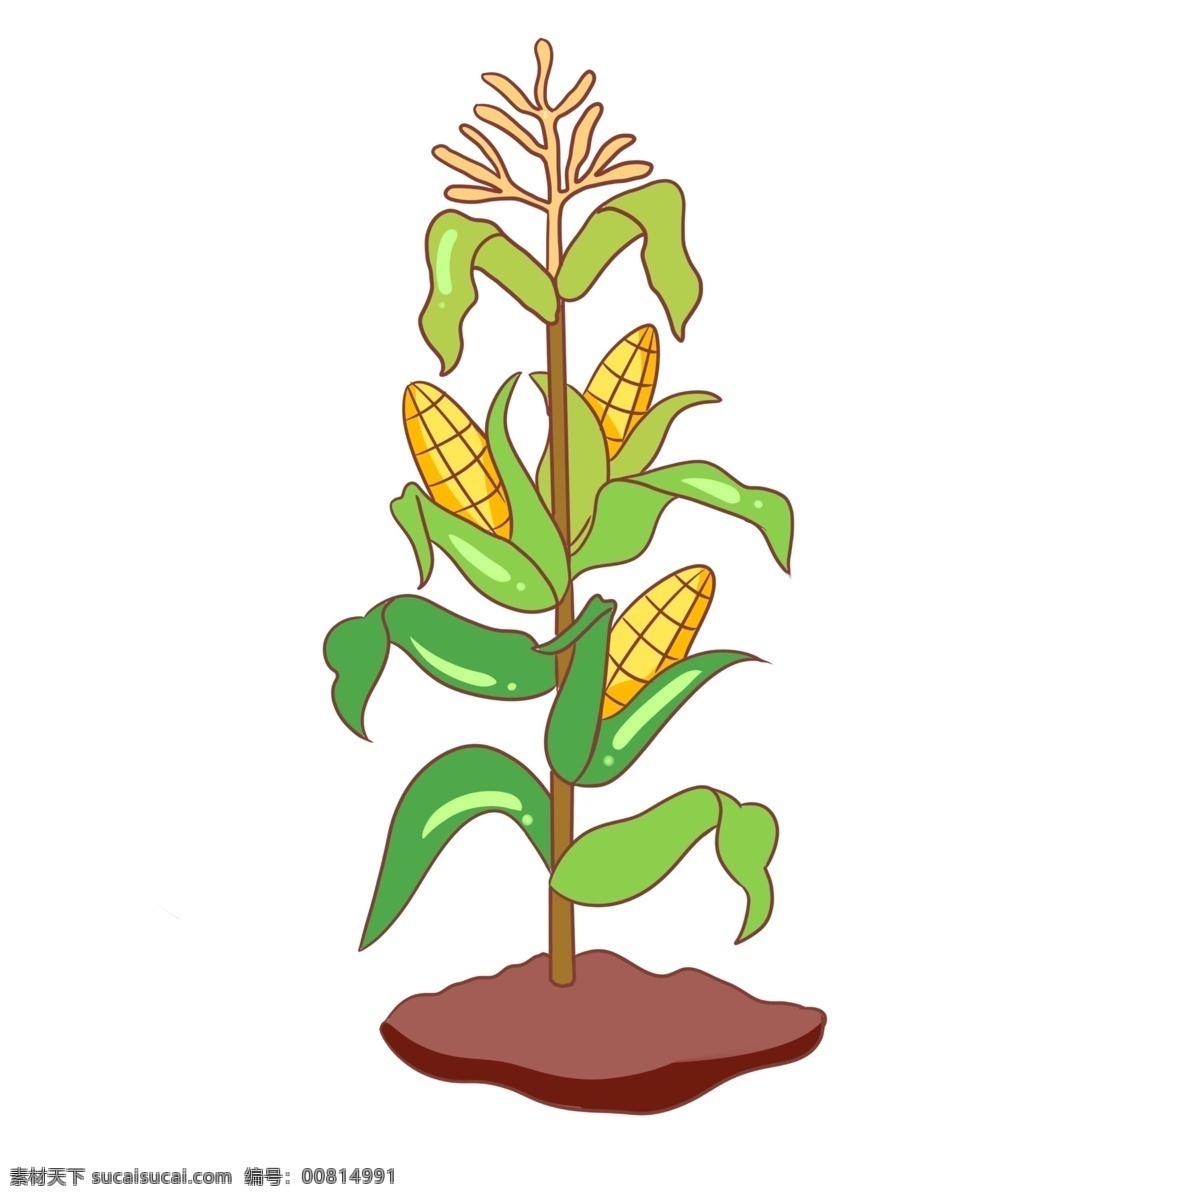 农作物 玉米 手绘 插画 农作物玉米 绿色的叶子 手绘玉米 卡通玉米 漂亮的玉米 红色的土壤 玉米装饰